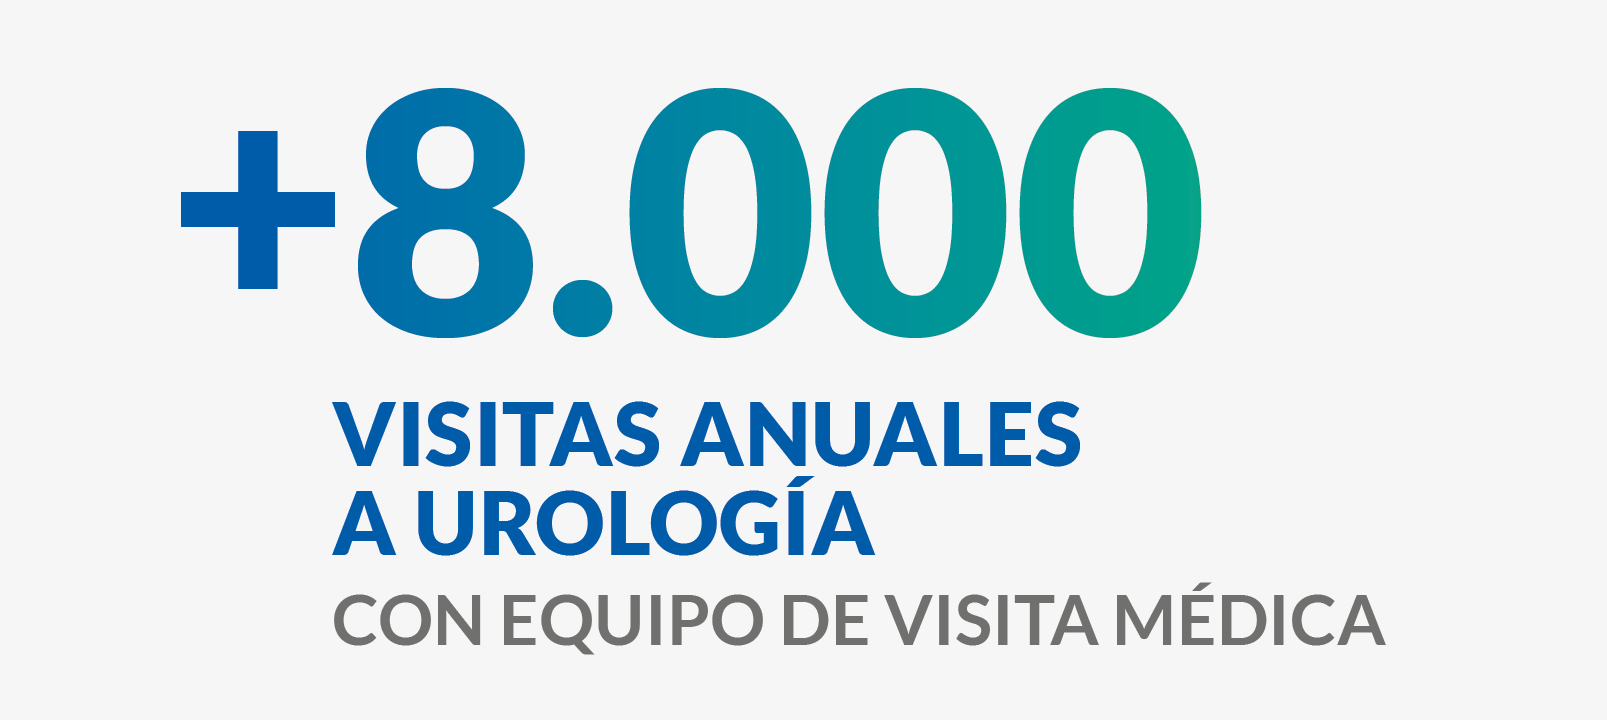 +8.000 visitas anuales a urología